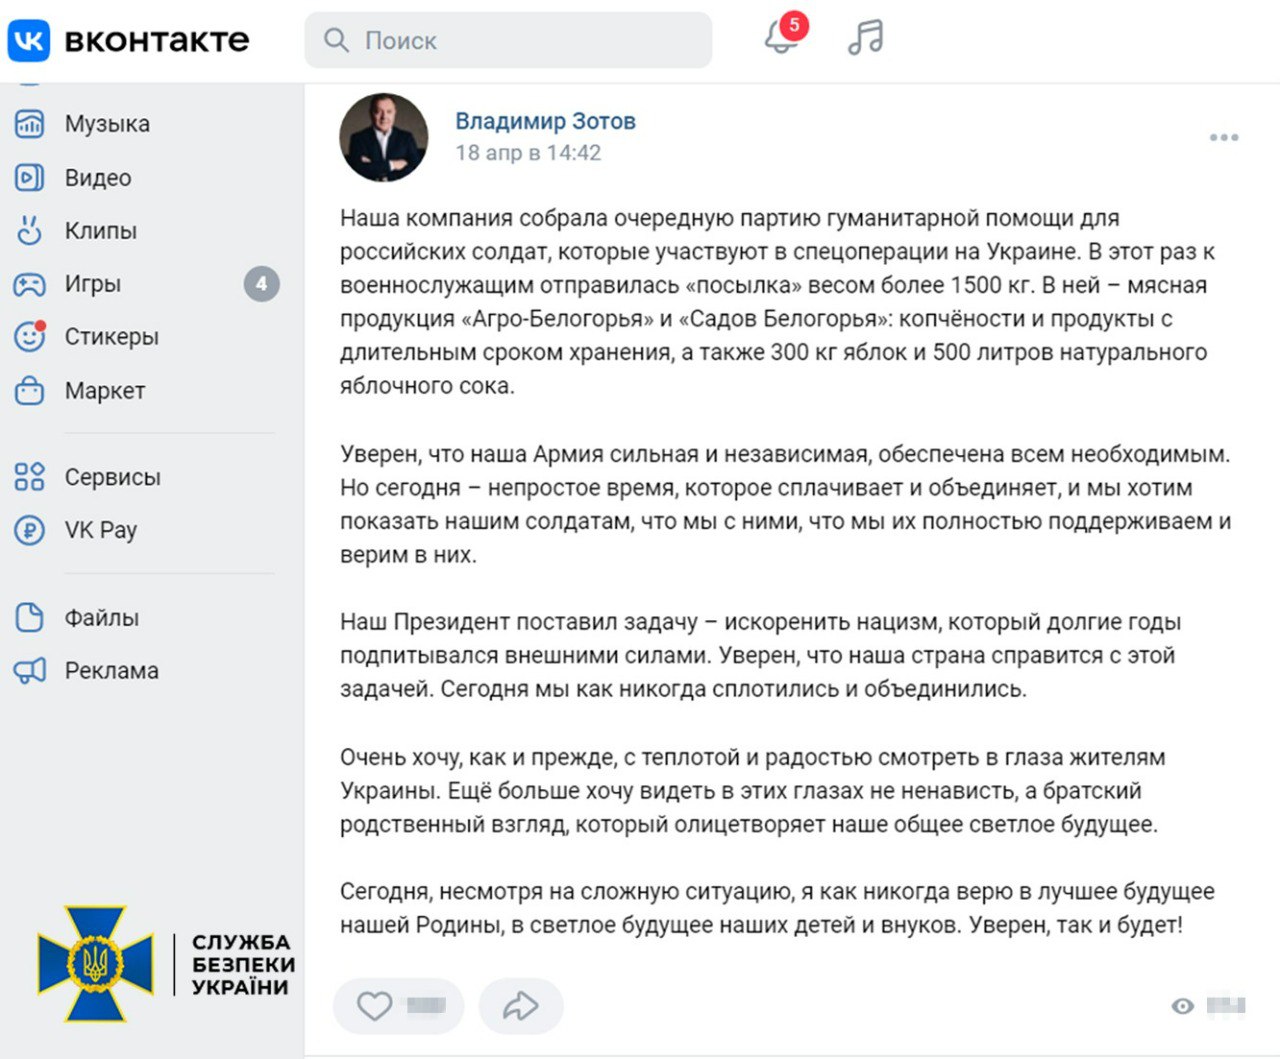 Суд арестовал украинские активы заместителя председателя Белгородской областной думы РФ. Фото: ssu.gov.ua